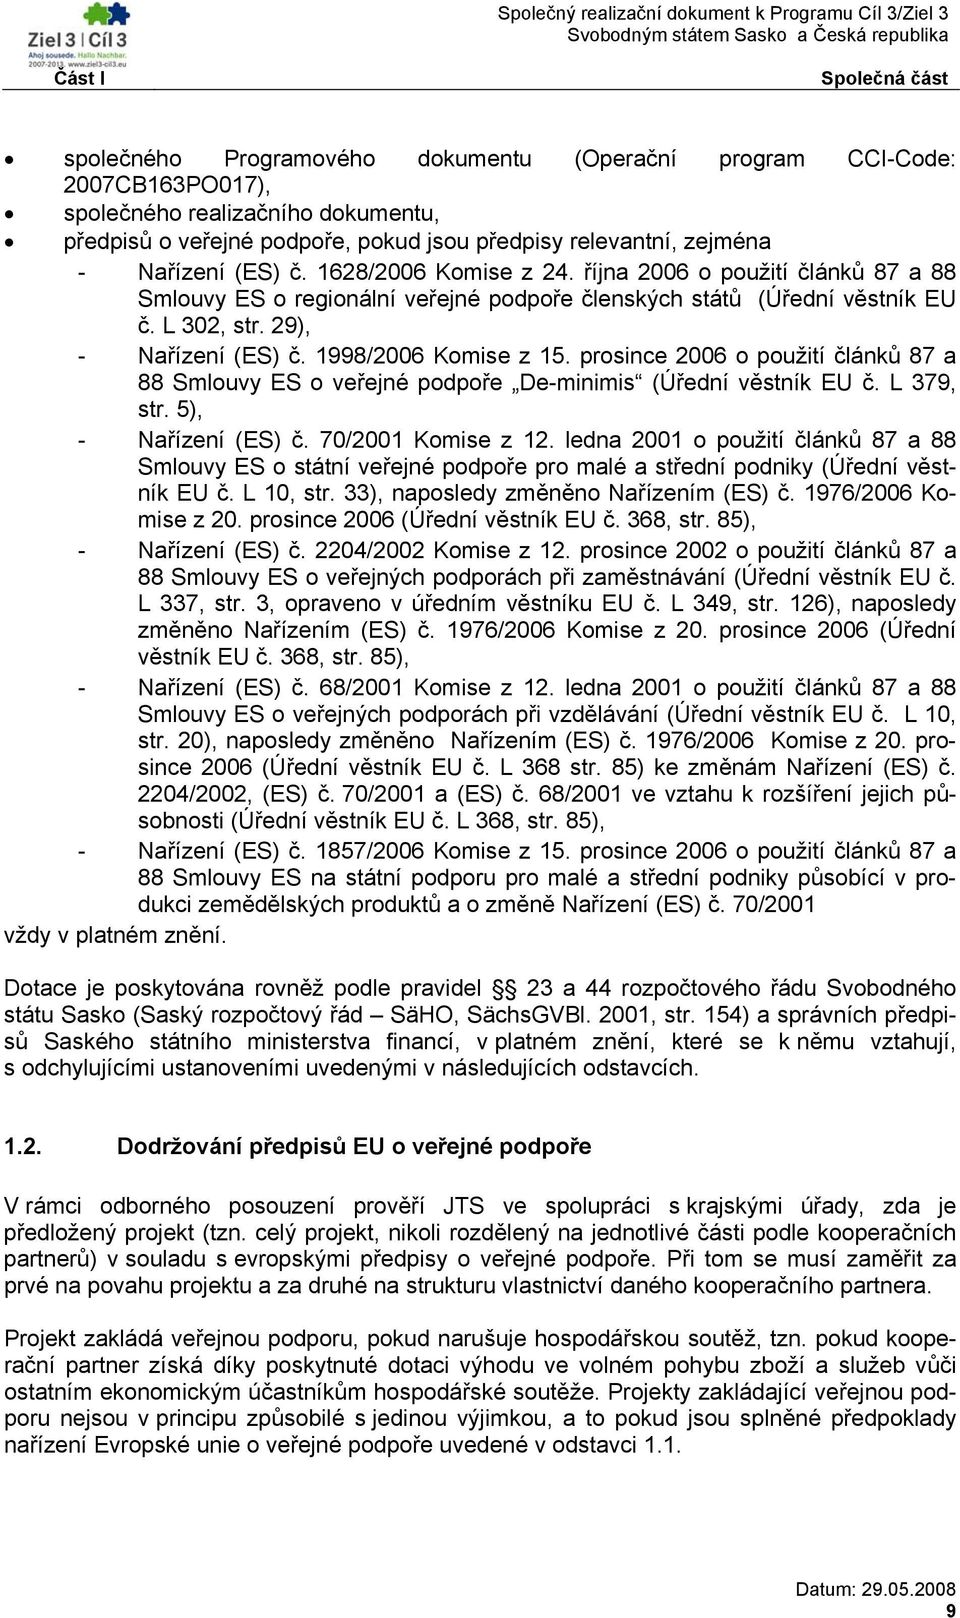 1998/2006 Komise z 15. prosince 2006 o použití článků 87 a 88 Smlouvy ES o veřejné podpoře De-minimis (Úřední věstník EU č. L 379, str. 5), - Nařízení (ES) č. 70/2001 Komise z 12.